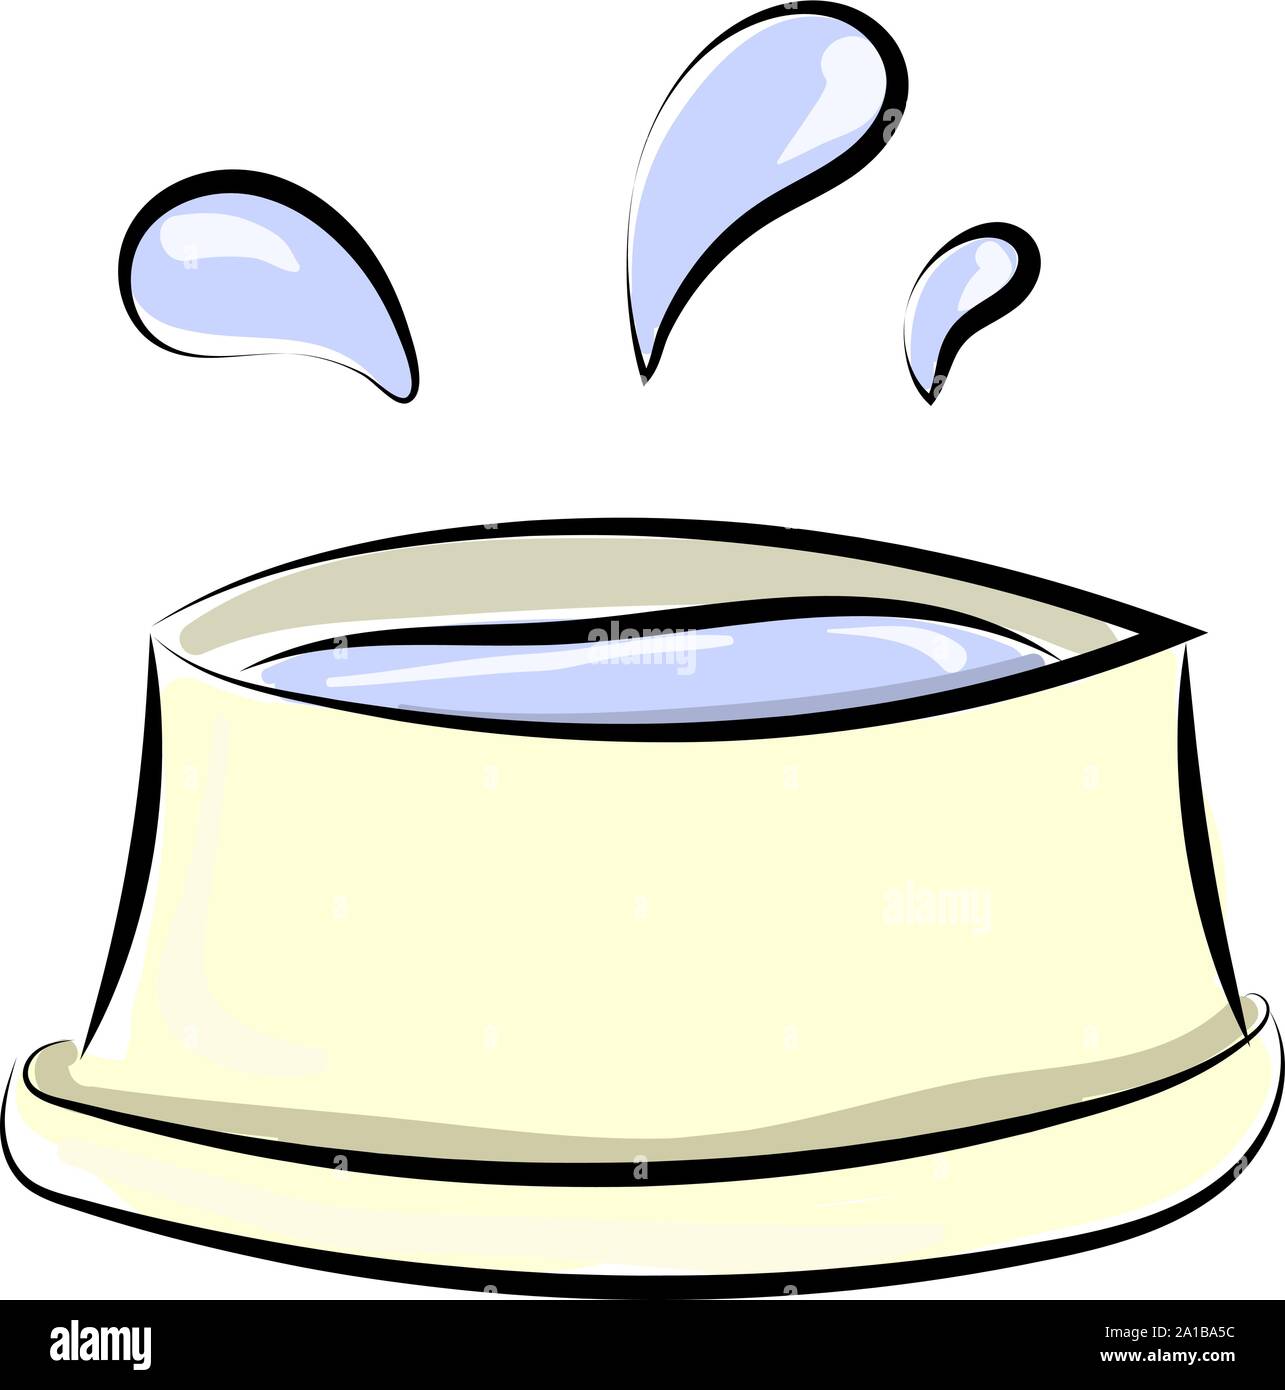 Un bol d'eau, de l'illustration vectorielle, sur fond blanc. Illustration de Vecteur